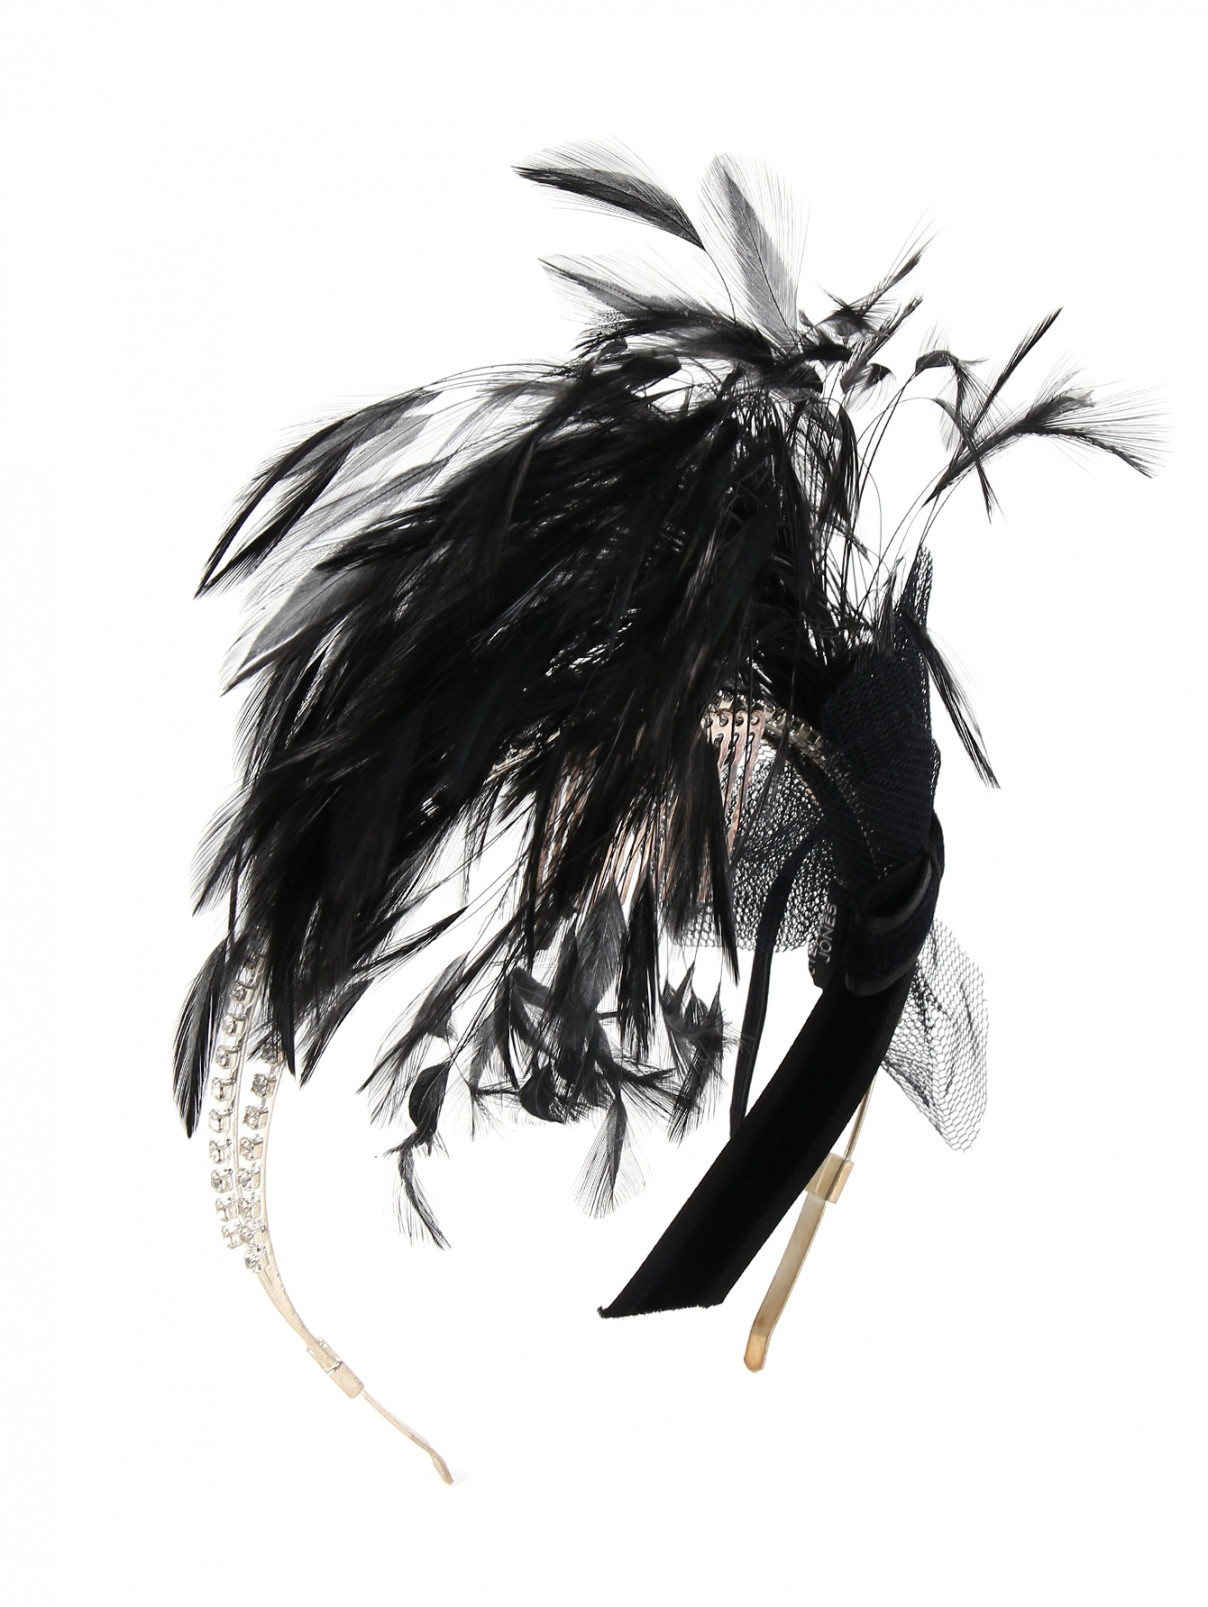 Ободок из металла декорированный  кристаллами и перьями Stephan Janson  –  Общий вид  – Цвет:  Черный